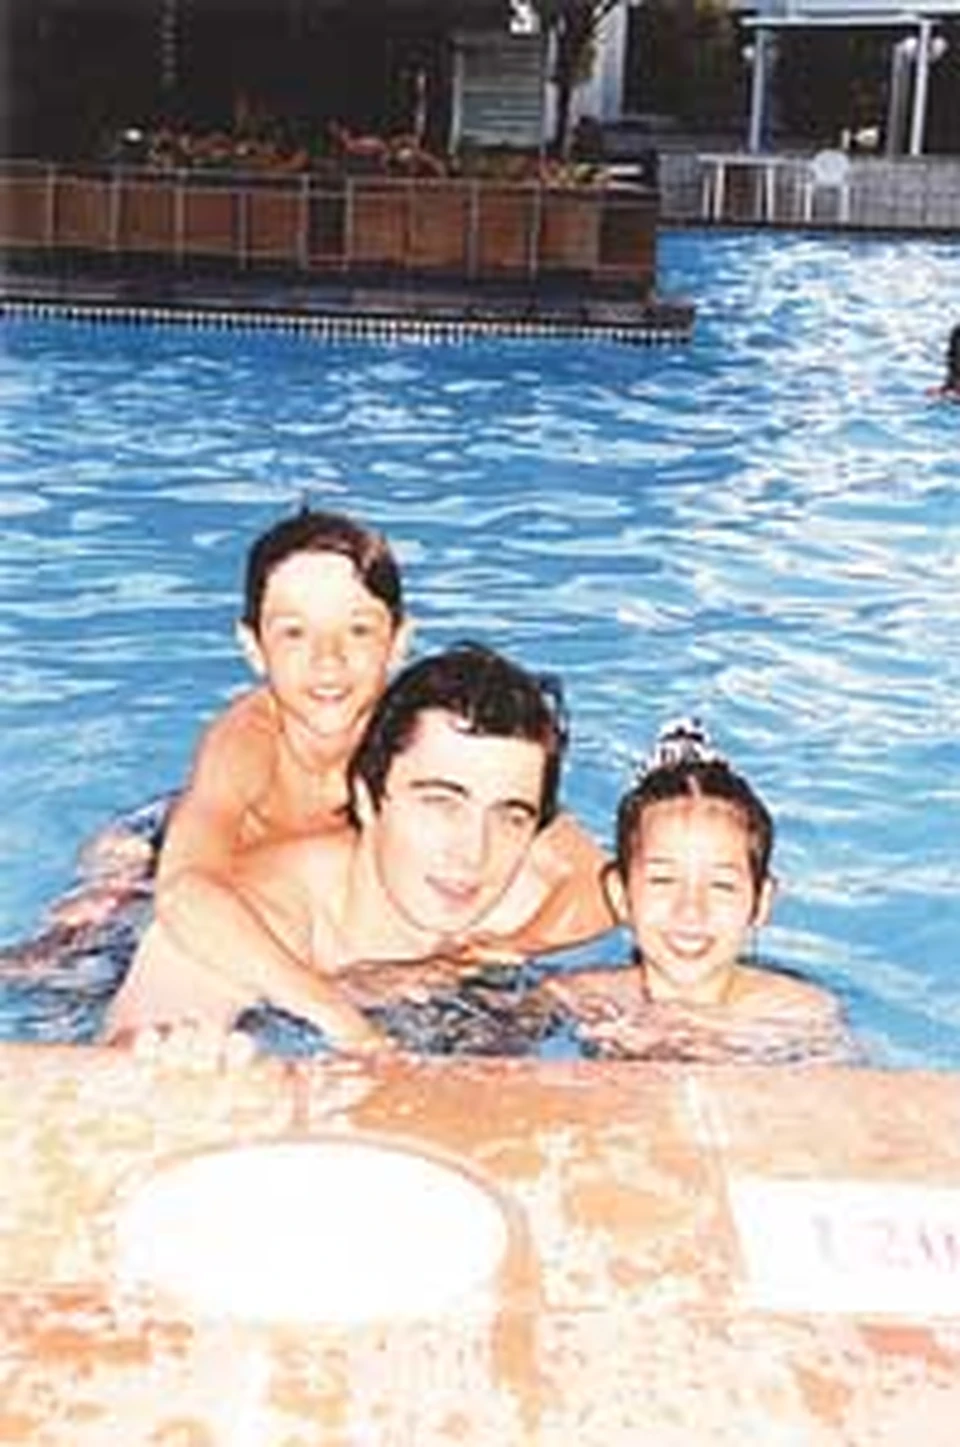 Сергей Бодров обожал детей - в Испании он часами плескался в бассейне с детьми  дрессировщиков Юлей и Олегом.